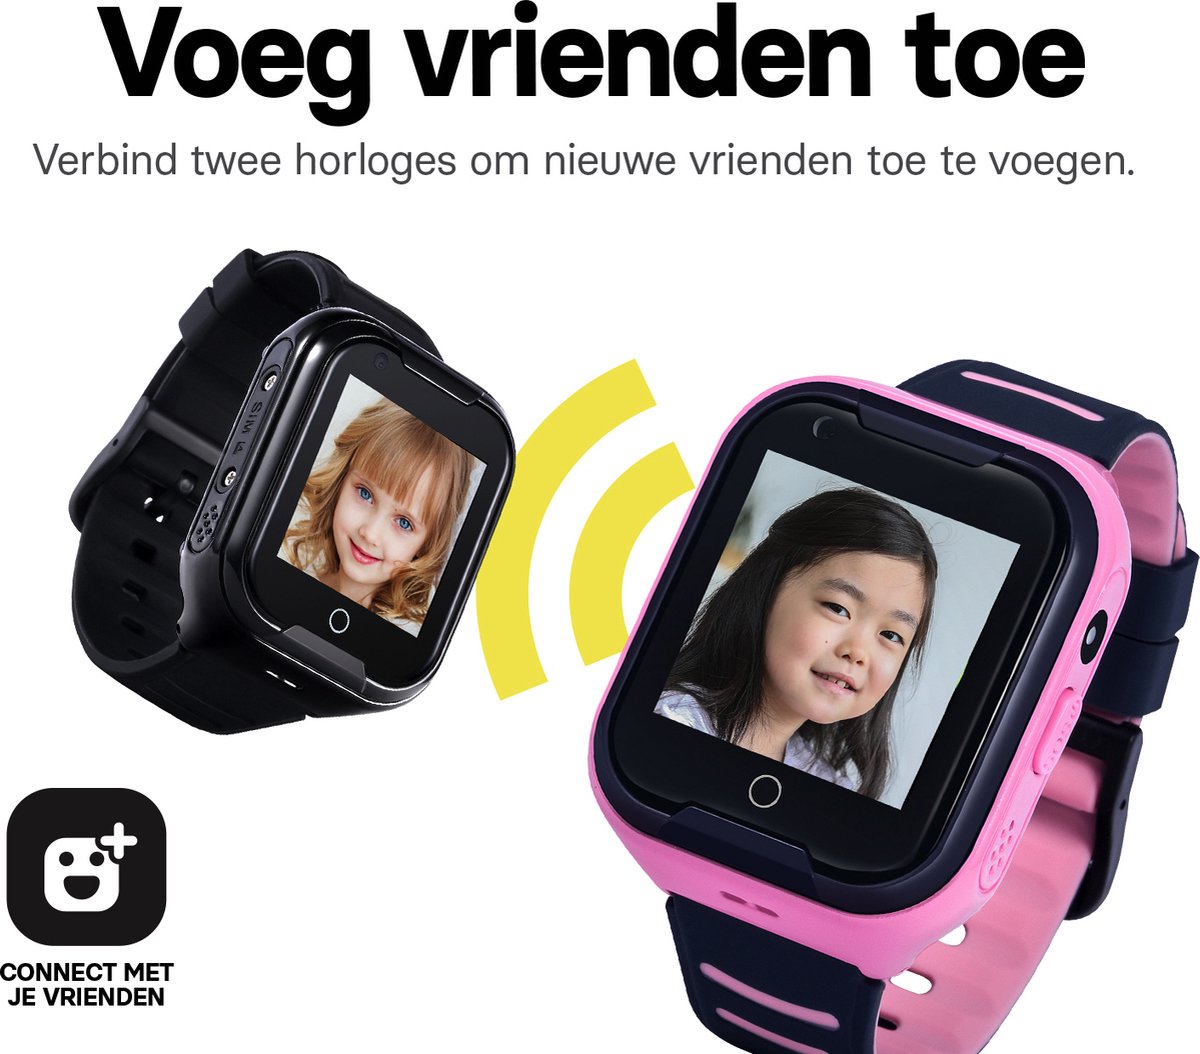 Montre-bracelet talkie walkie étanche - Chine 4G enfants regarder et 4G  Montre GPS prix